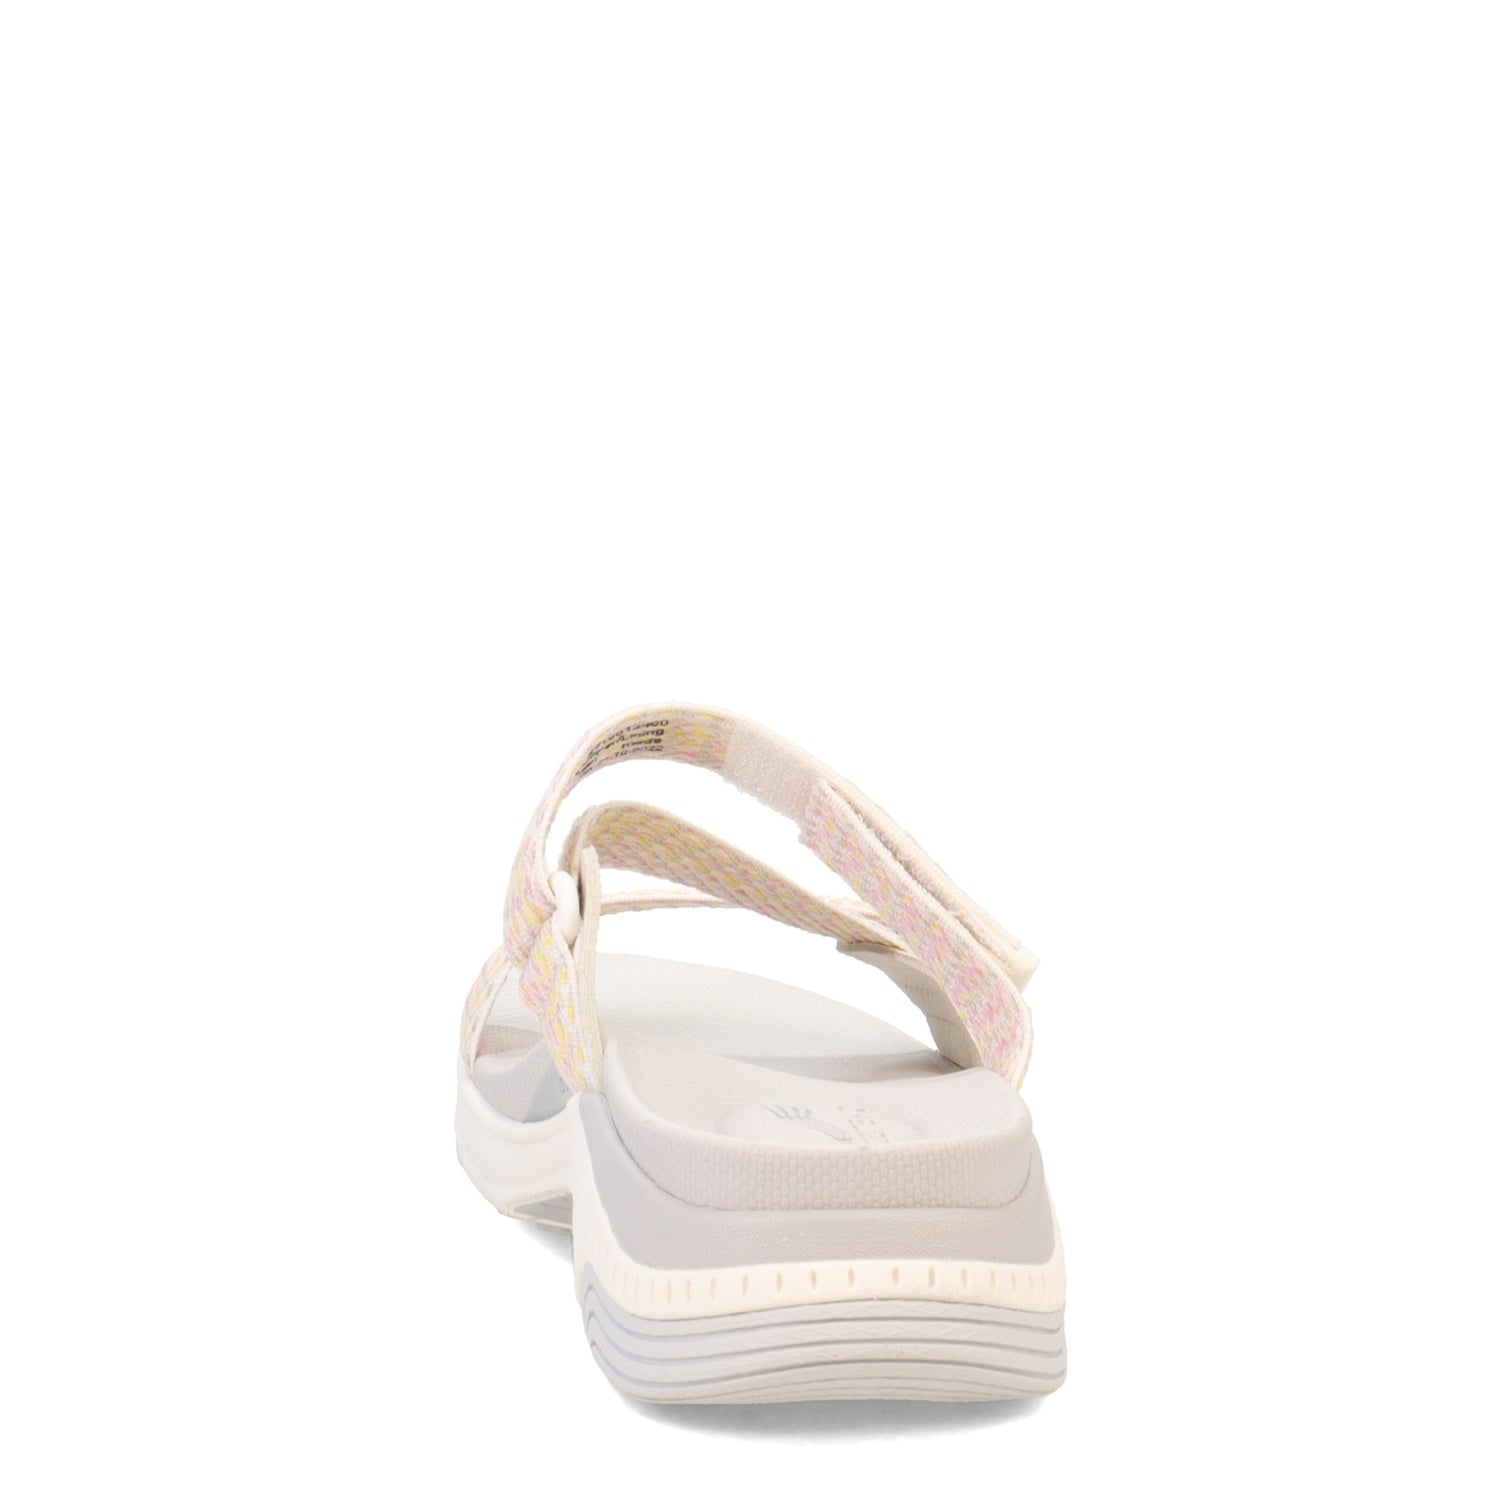 Peltz Shoes  Women's Dansko Rosette Sandal Ivory 4916-612400